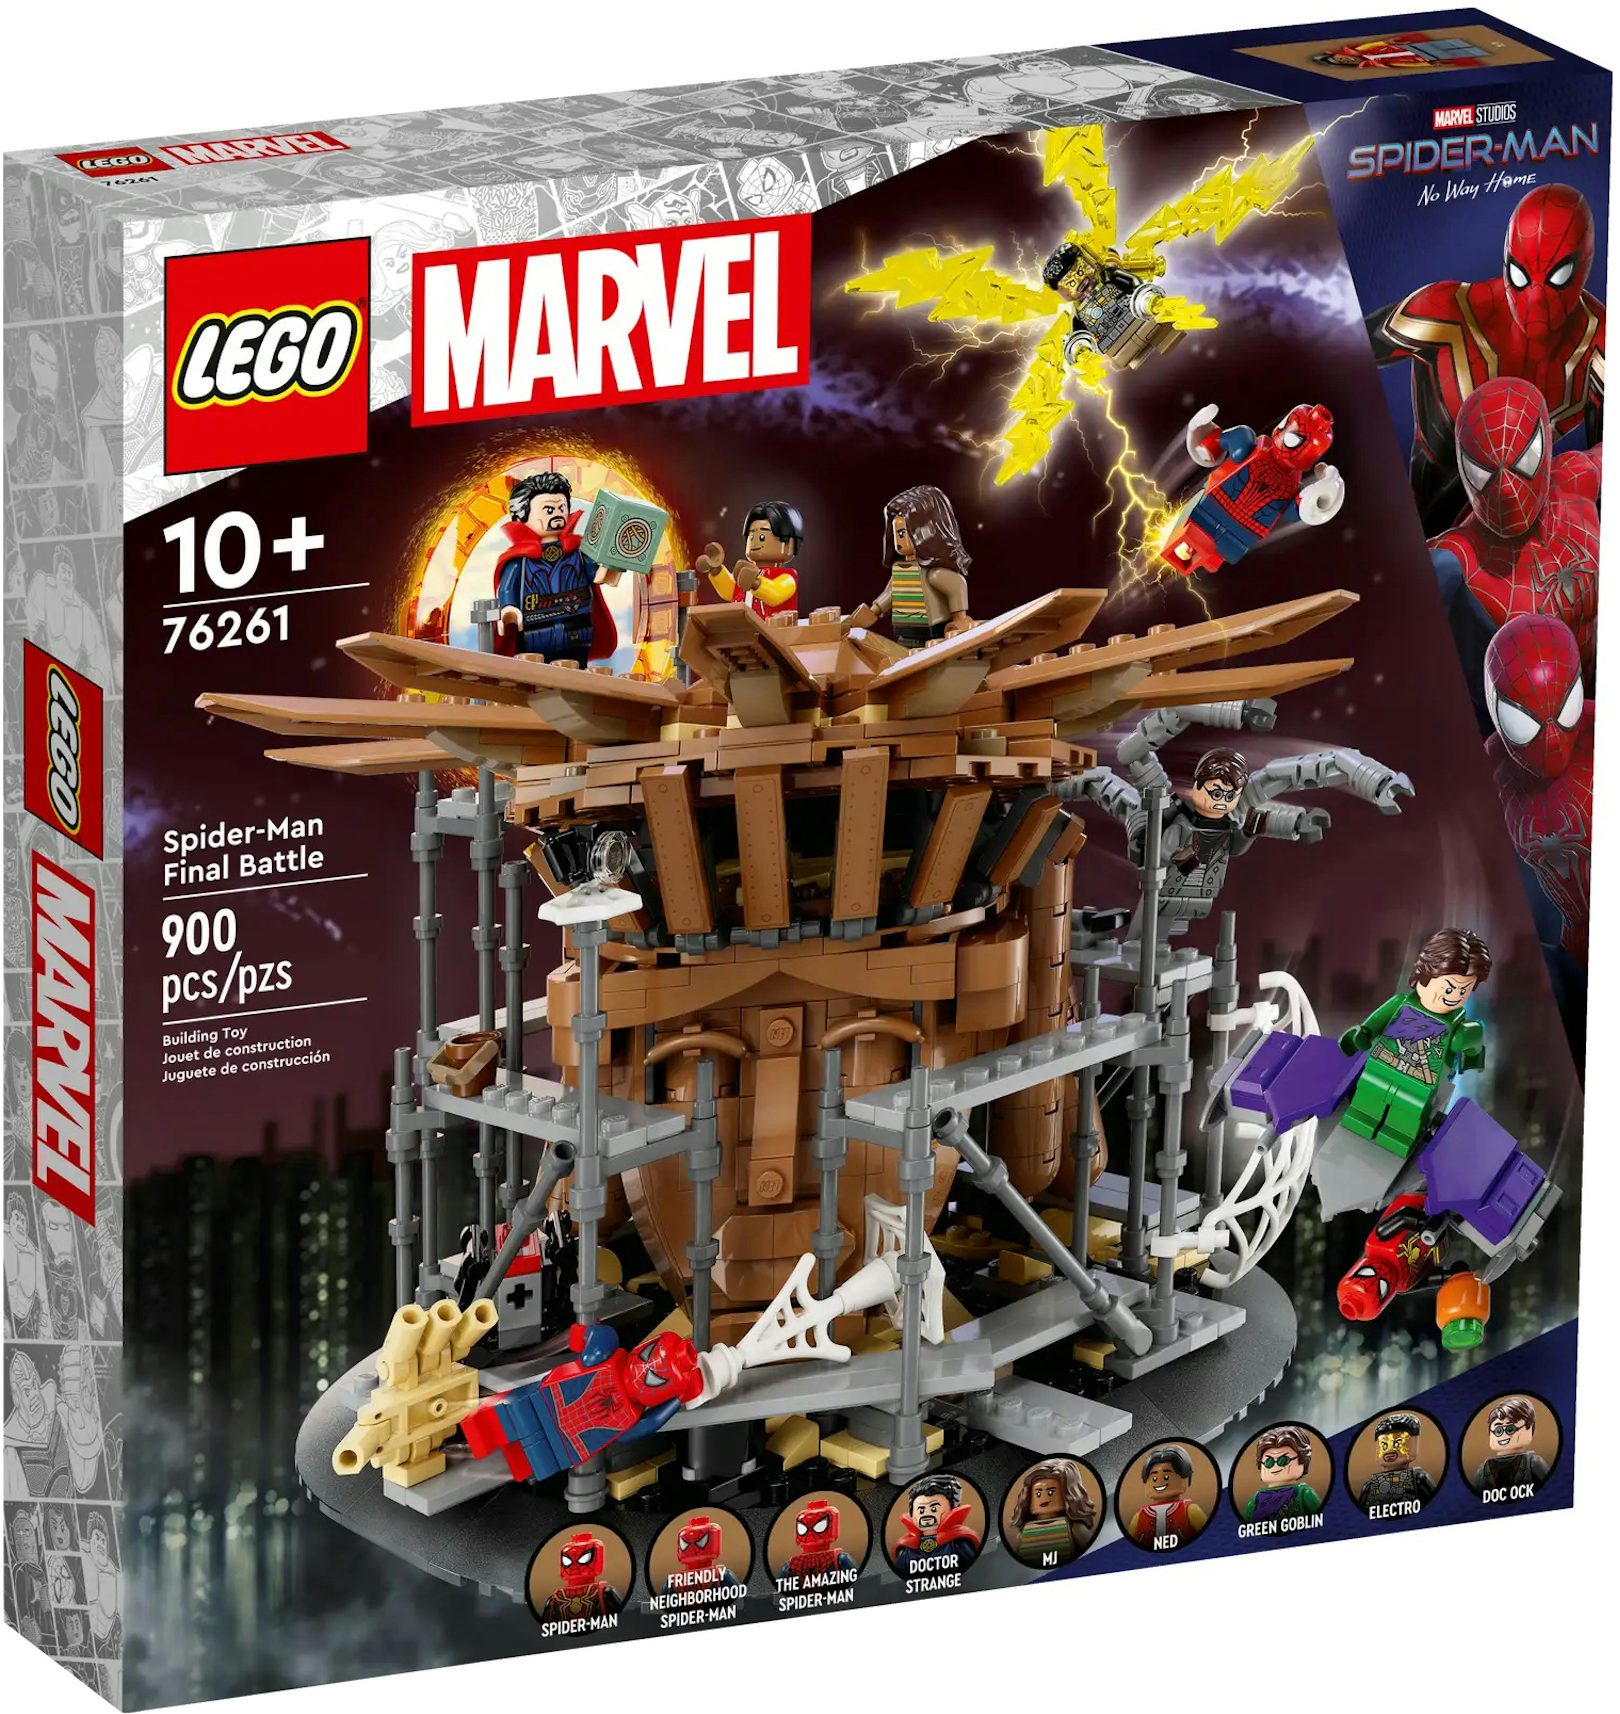 https://images.stockx.com/images/LEGO-Marvel-Spider-Man-Final-Battle-Set-76261.jpg?fit=fill&bg=FFFFFF&w=1200&h=857&fm=jpg&auto=compress&dpr=2&trim=color&updated_at=1686930960&q=60